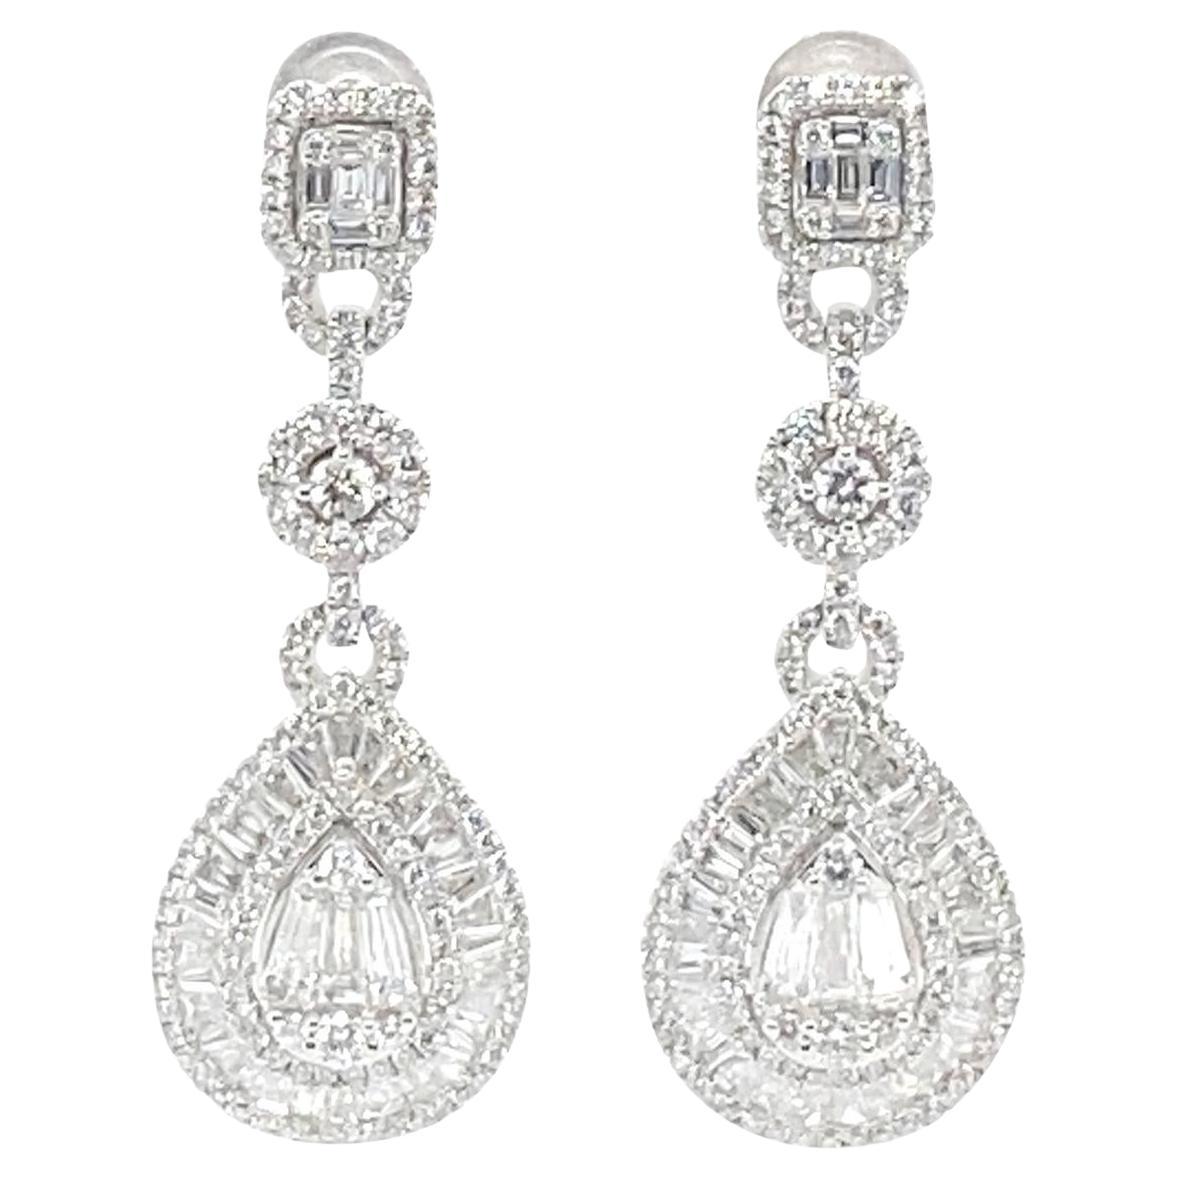 2.62 Carat Diamond Earrings For Sale